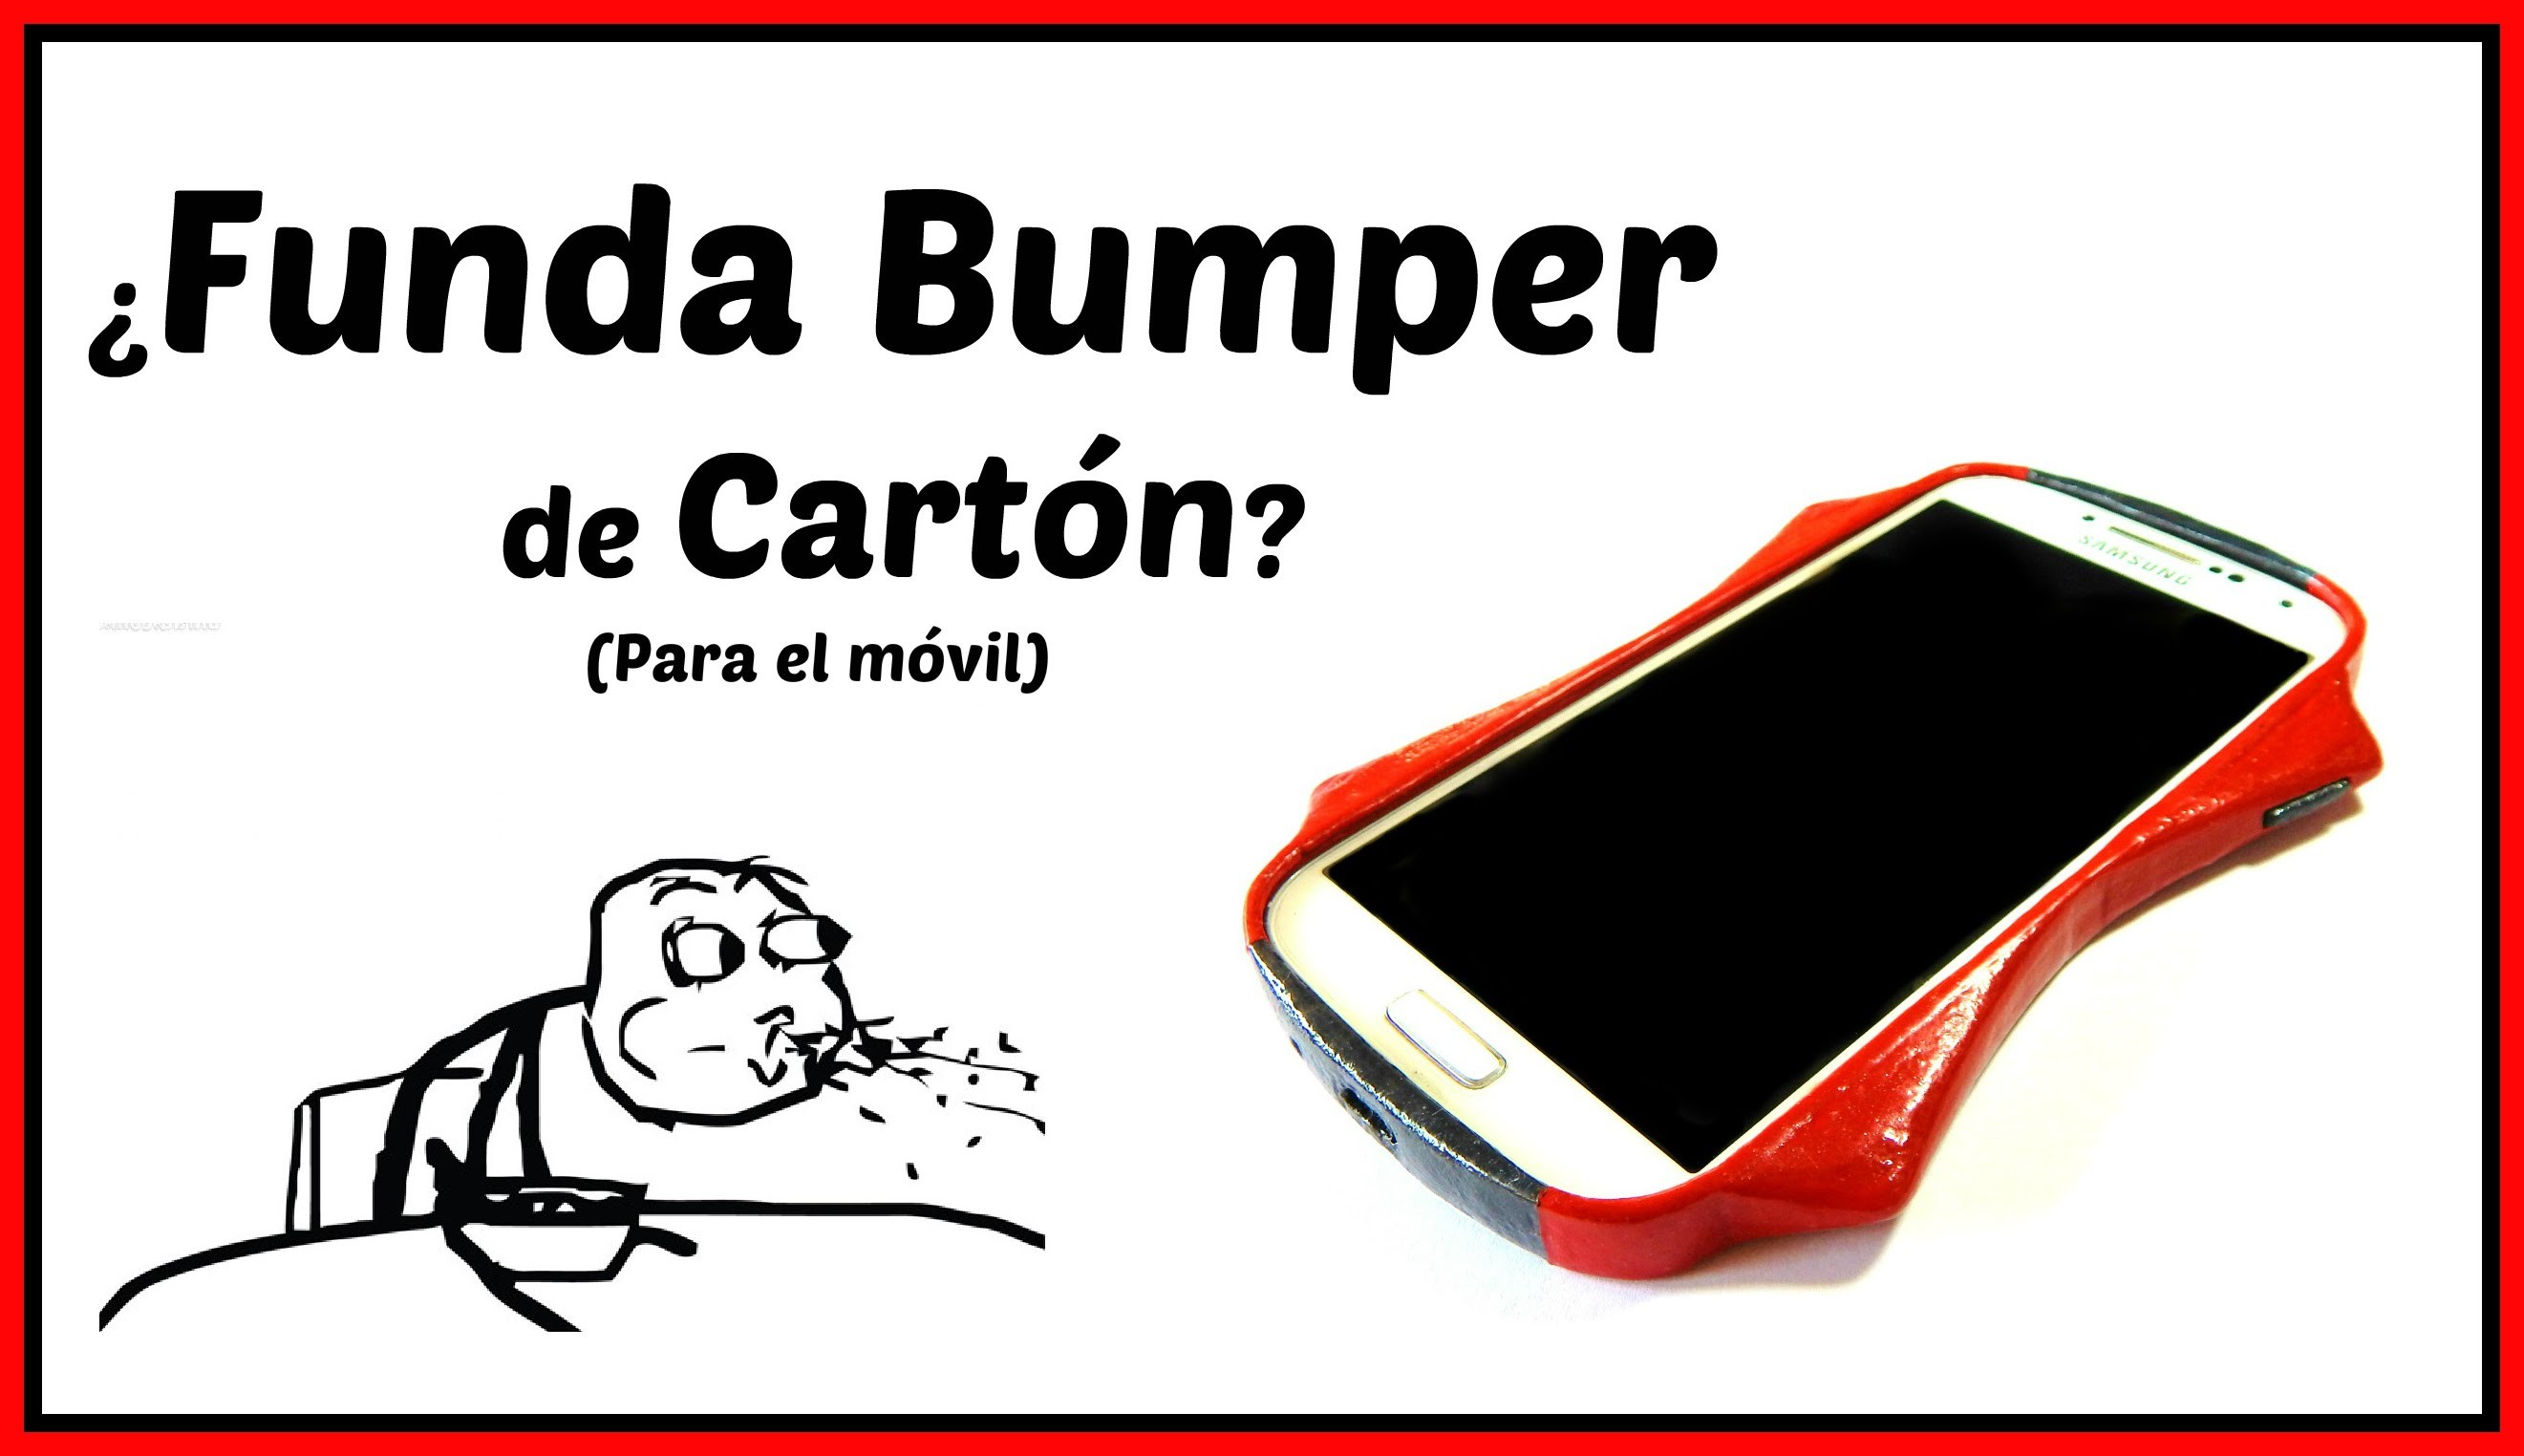 Cómo hacer una funda Bumper para el celular con ¿Cartón? | Pablo Inventos